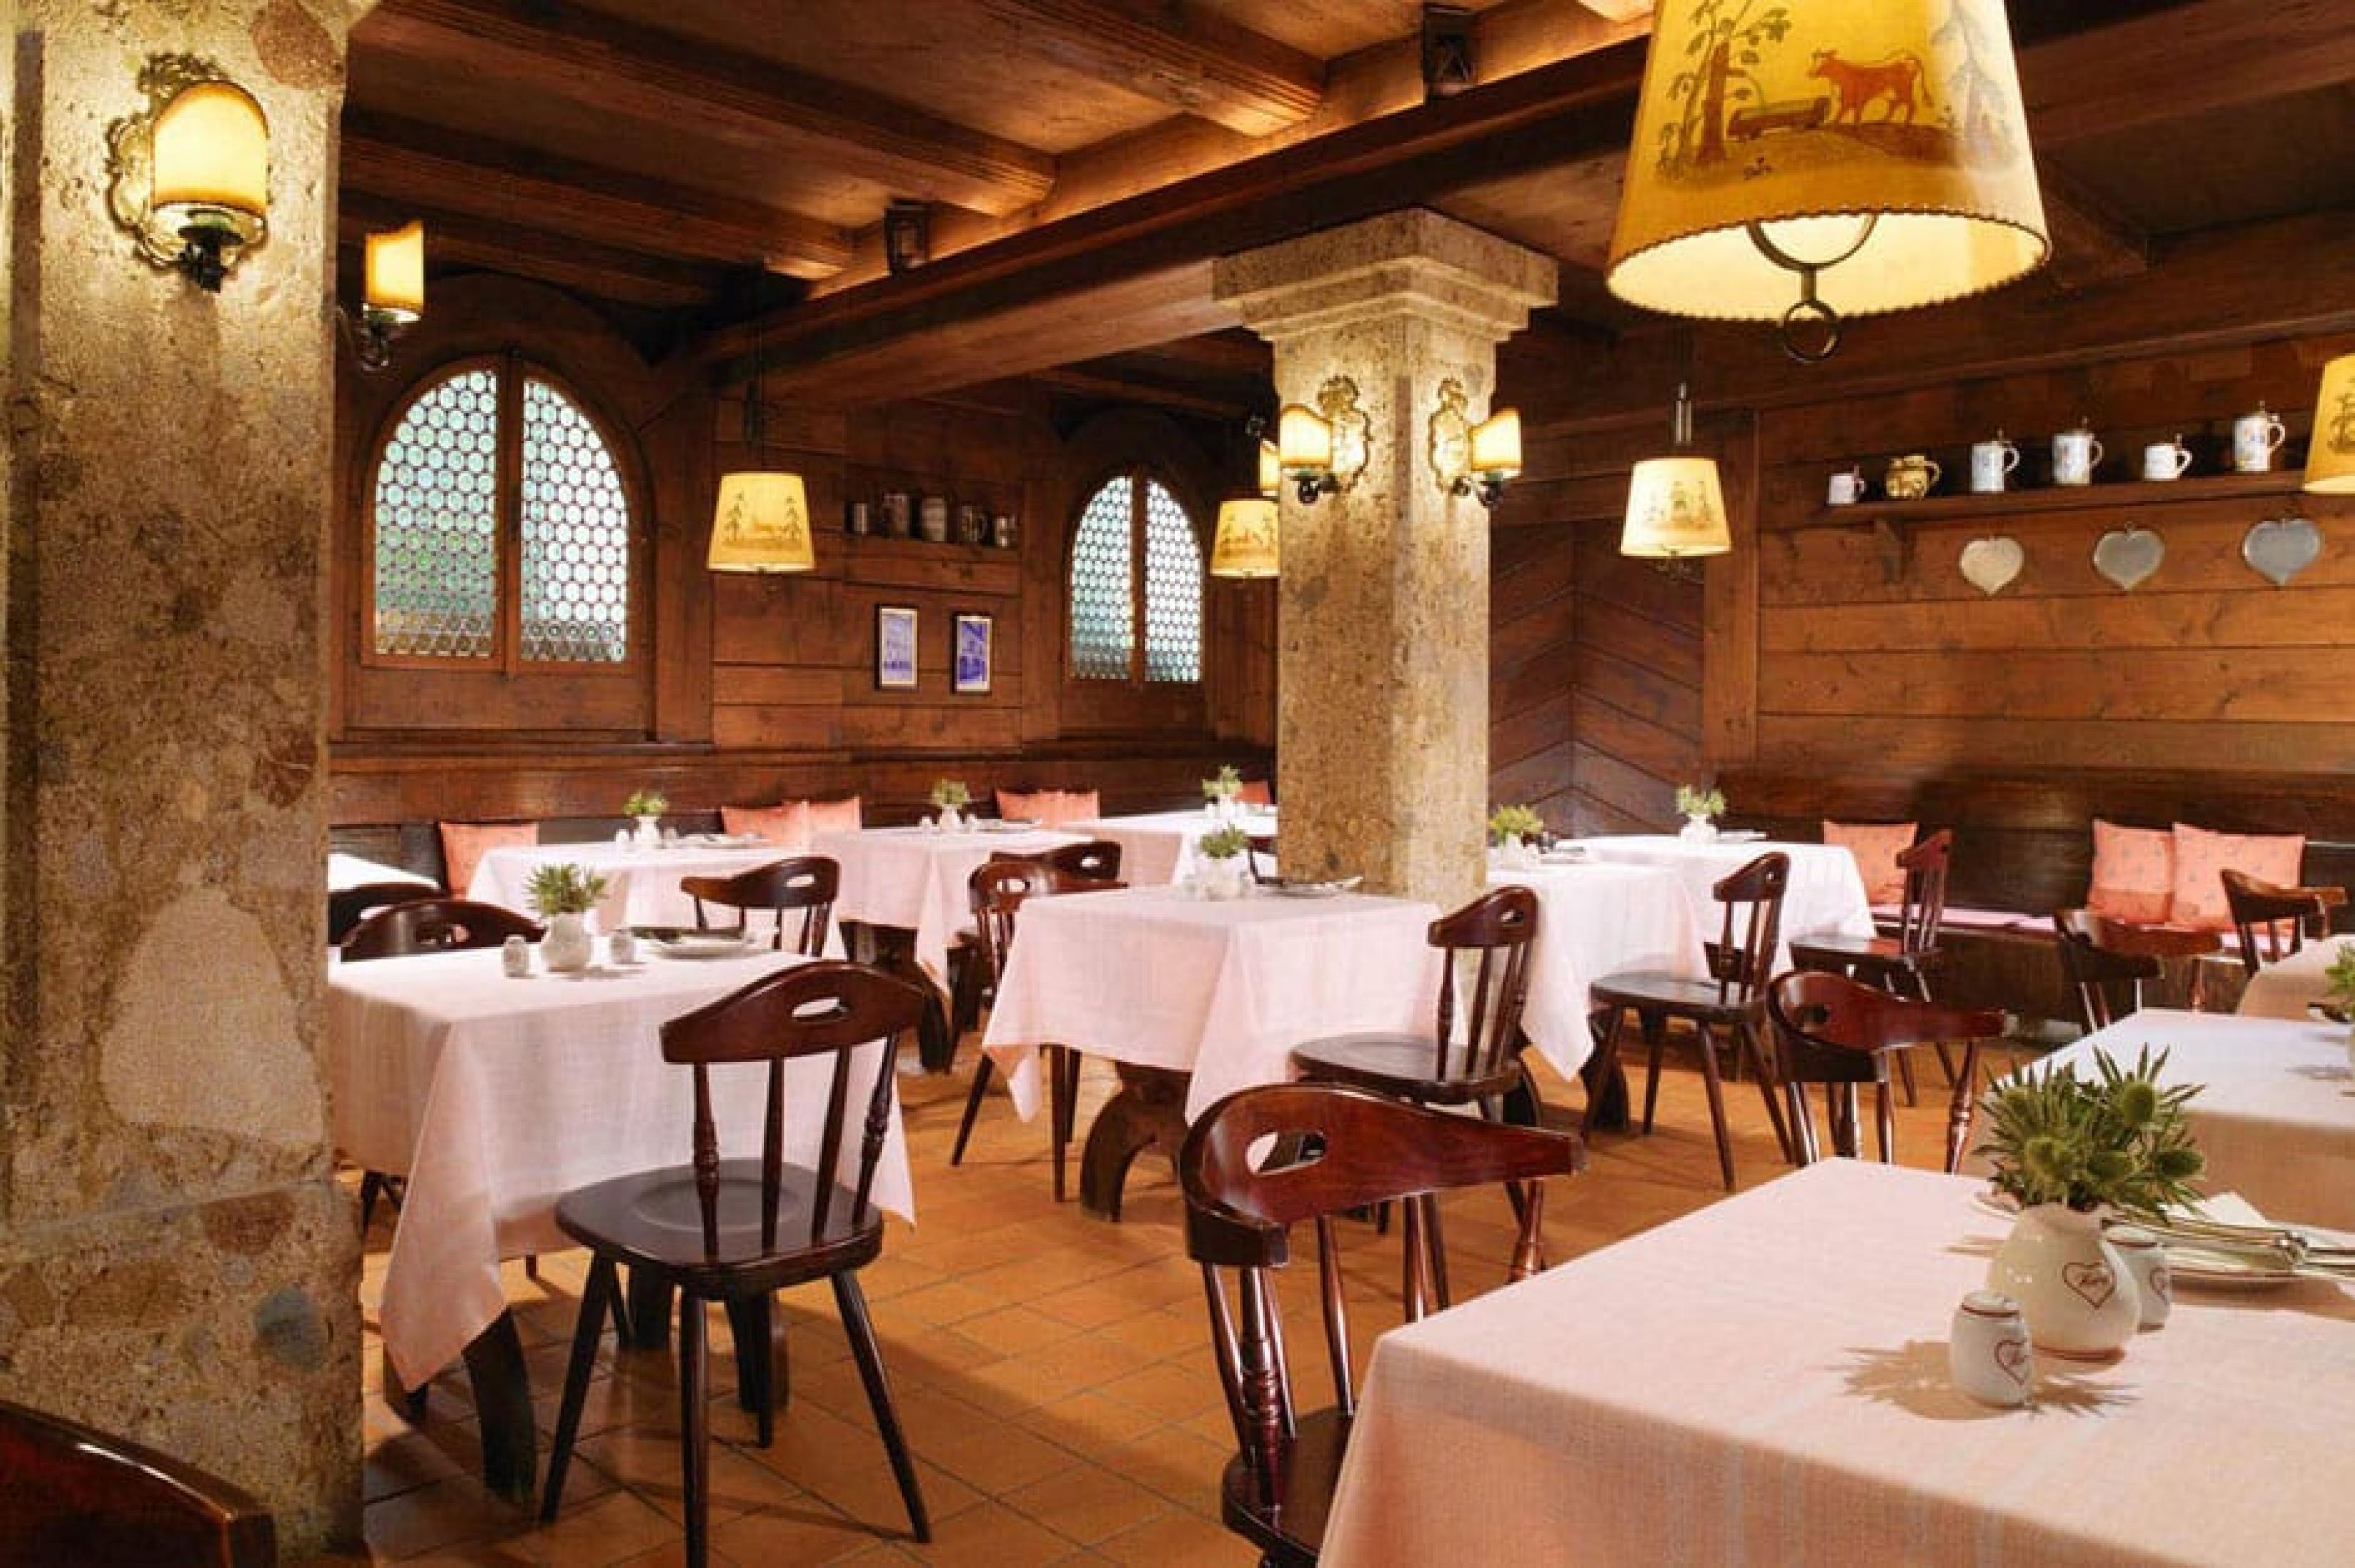 Dinning Area at Tavern S’ Herzl, Salzburg, Austria